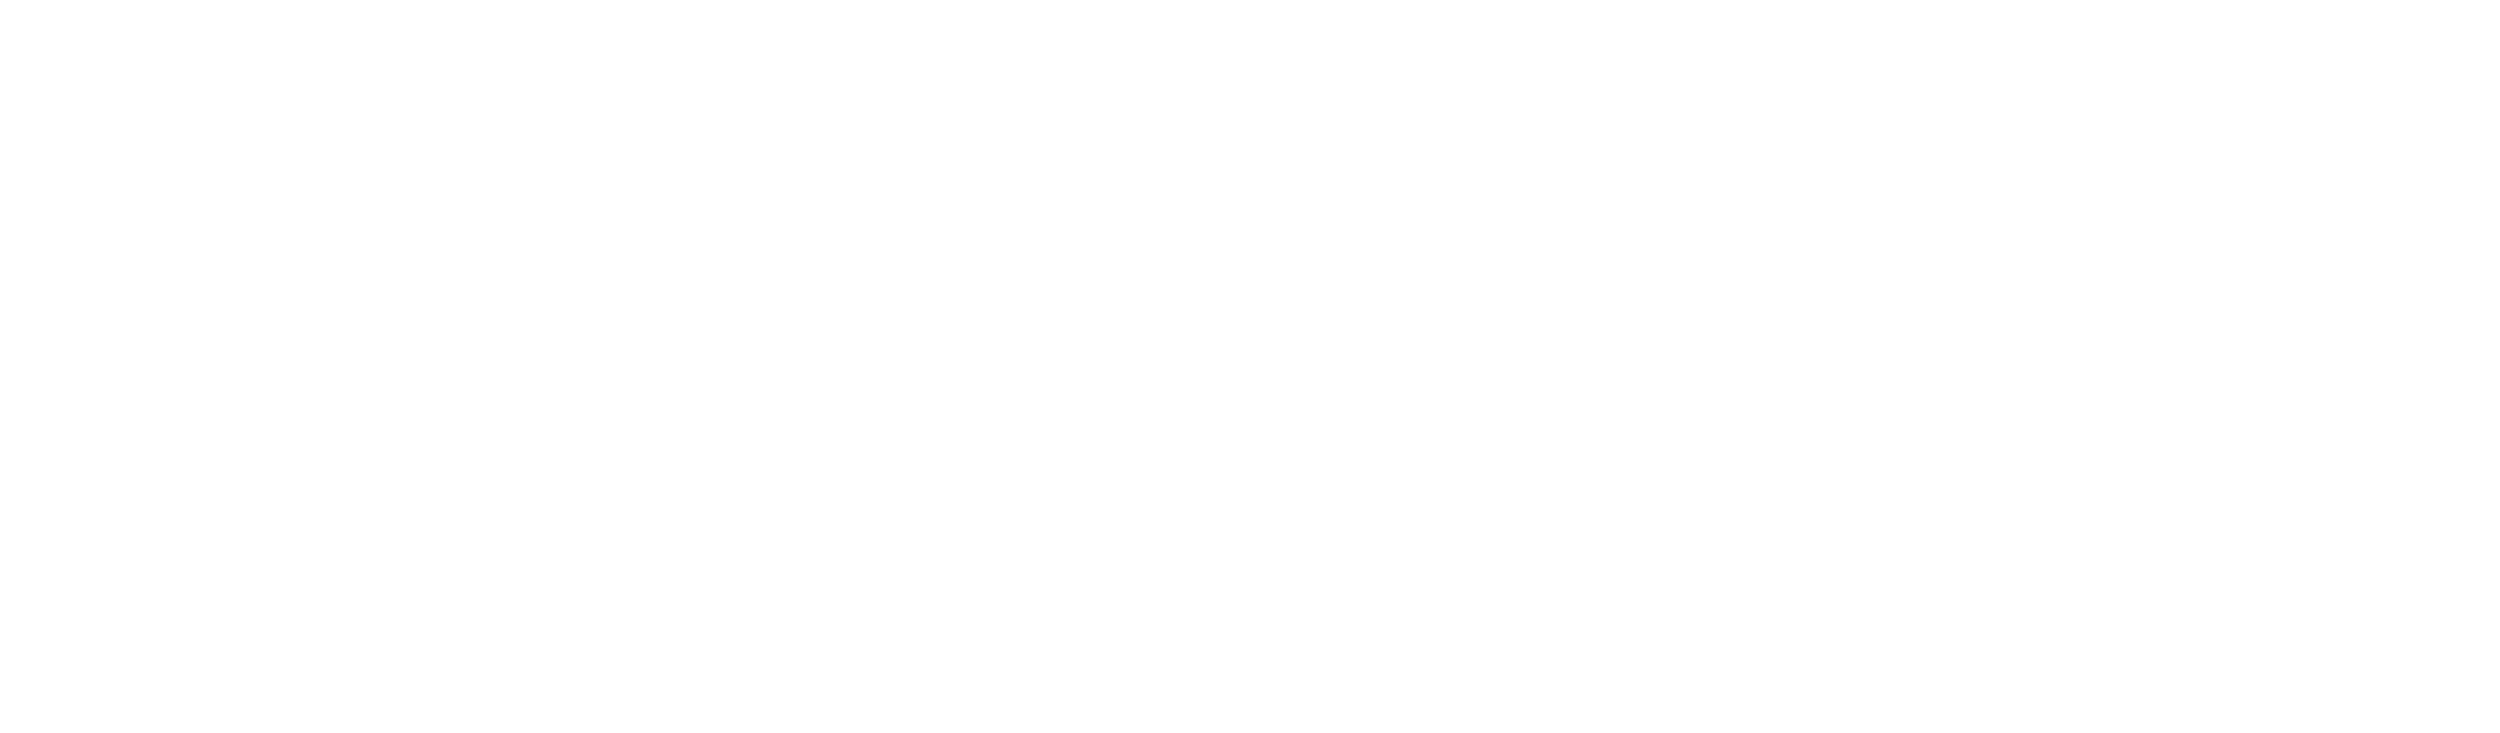 Blackbull+Group